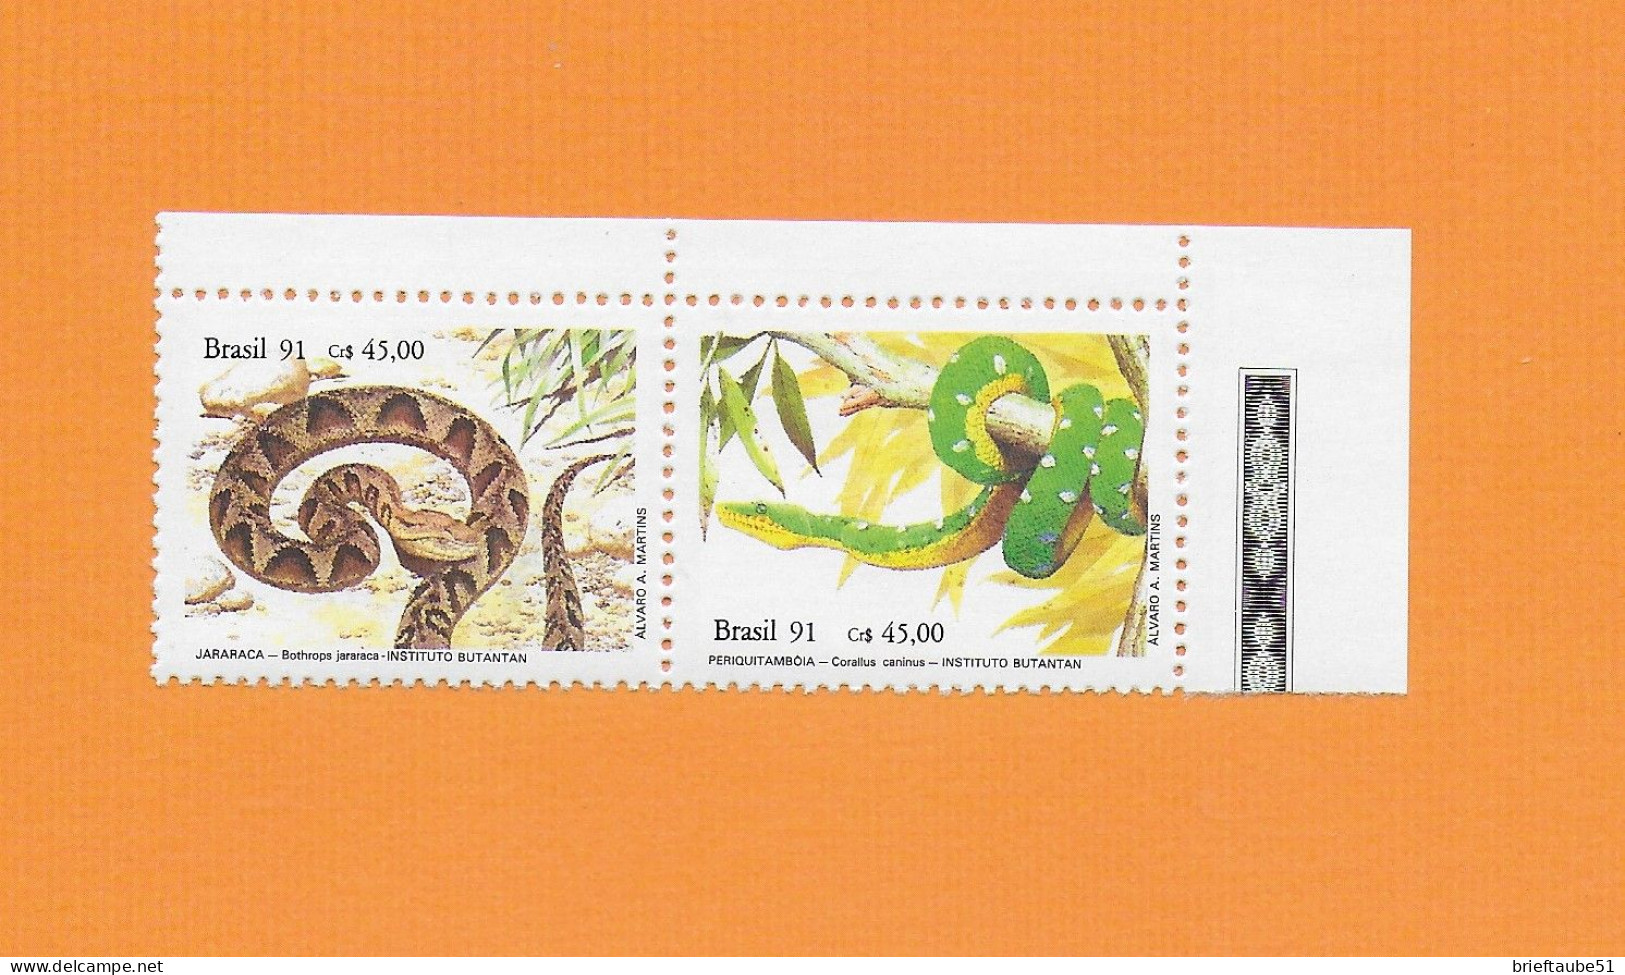 BRASILIEN BRASIL 1991  Postfrisch**MNH  MICHEL-Nr. 1415-1416 (Rand) = REPTILIEN  # SCHLANGEN  # Naturschutz: Reptilien - Serpents